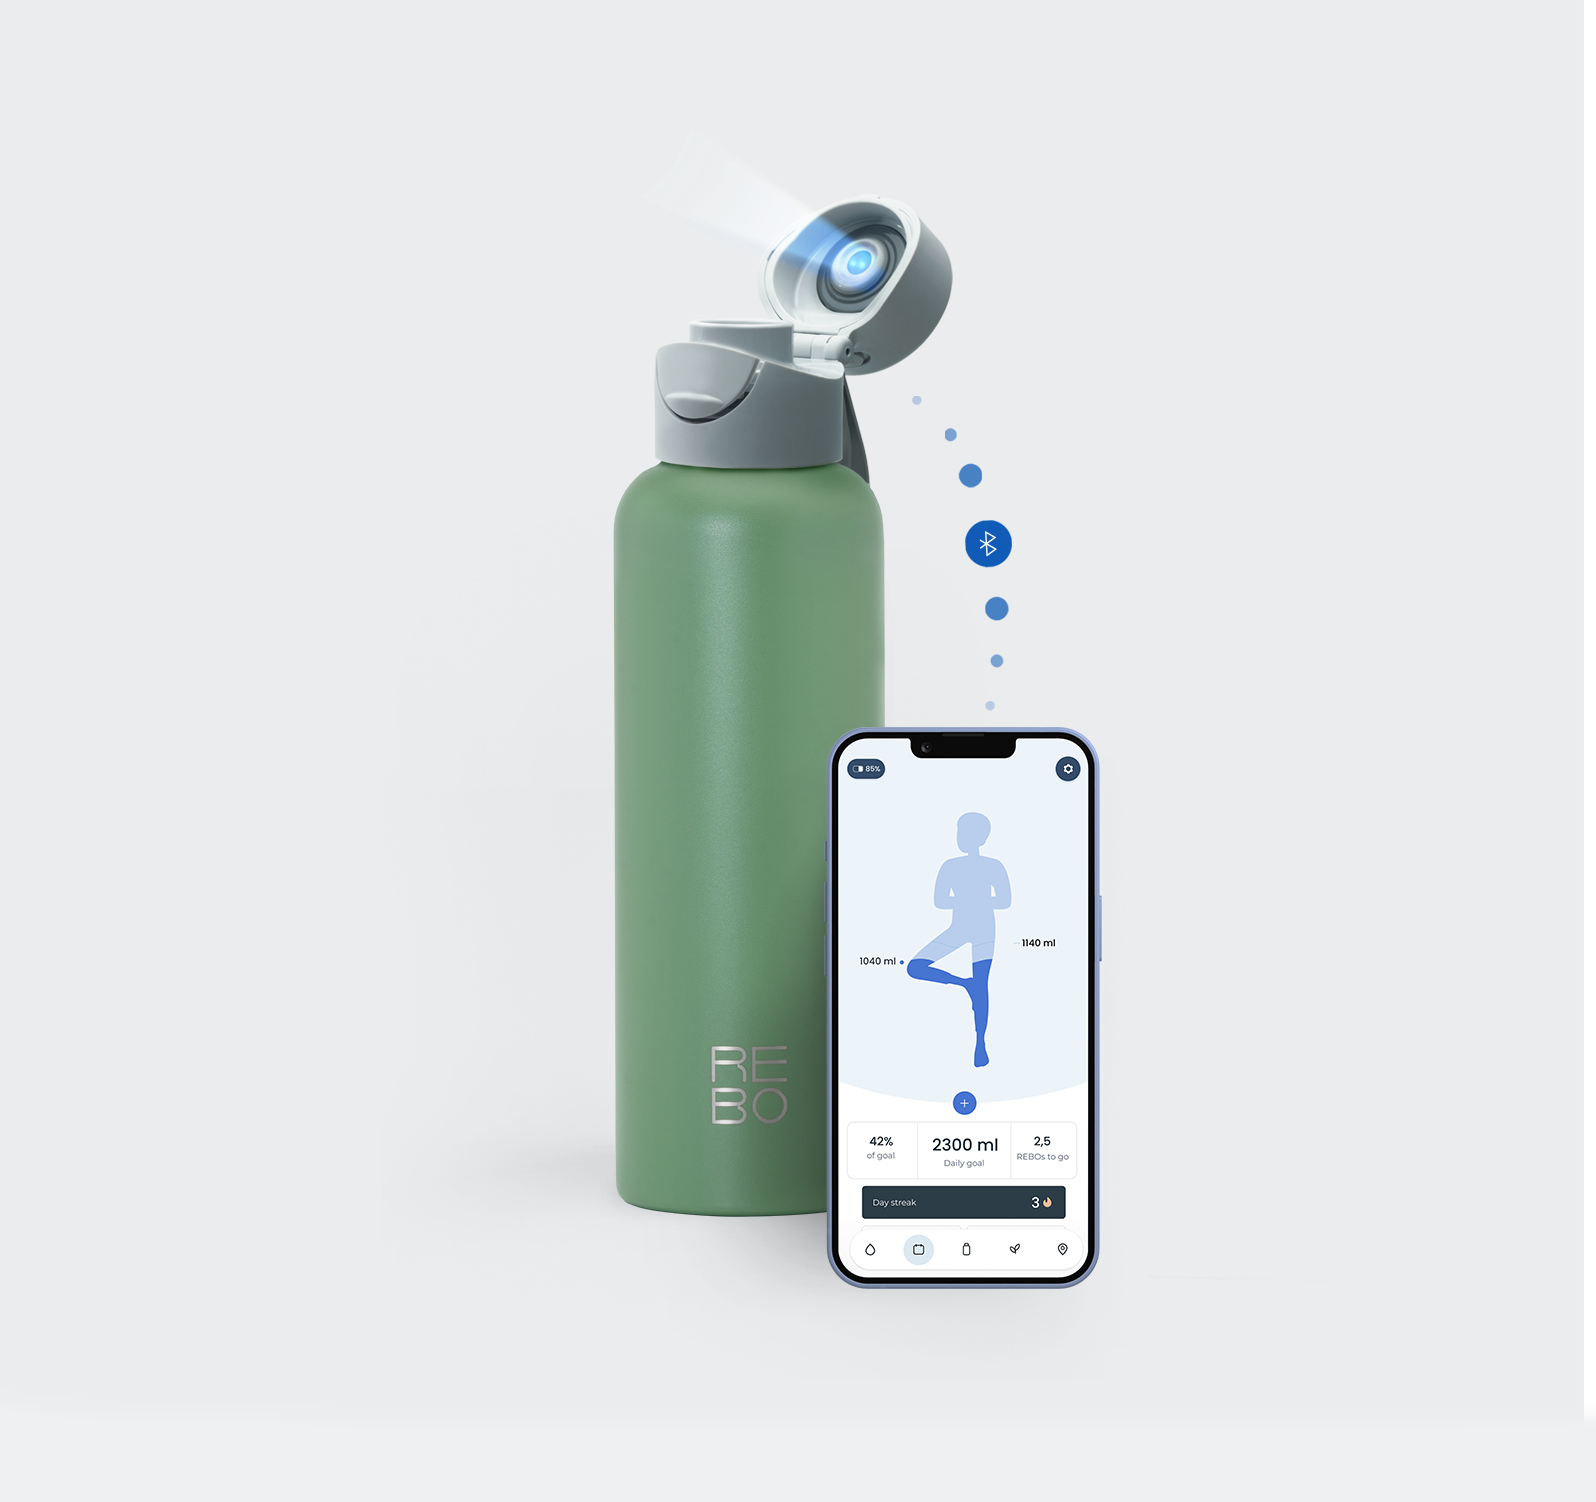 Stainless steel smart water bottle